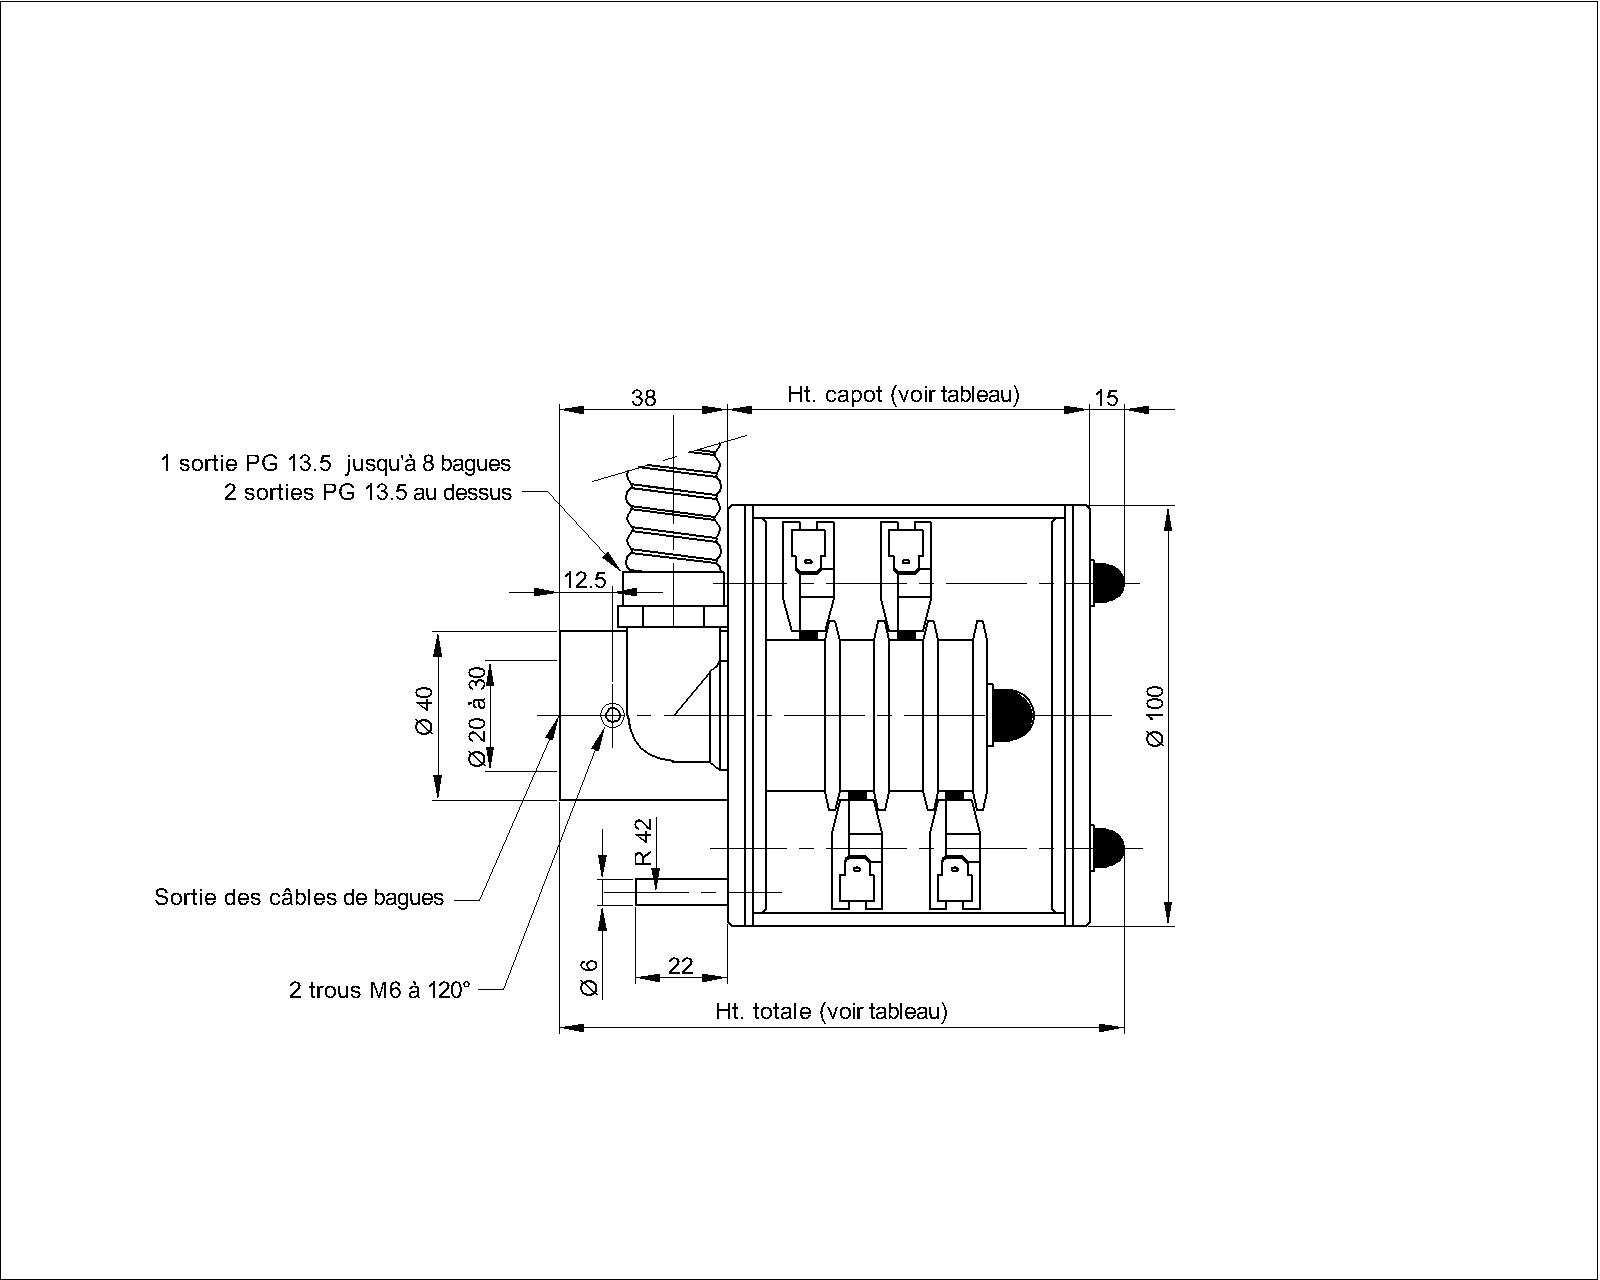 CARACTERISTIQUES STANDARD Caracteristiques communes aux versions 16 A : 1 porte-balais double type DTU 4 x 10 par bague Câbles haute température 1.5 mm² x 1.